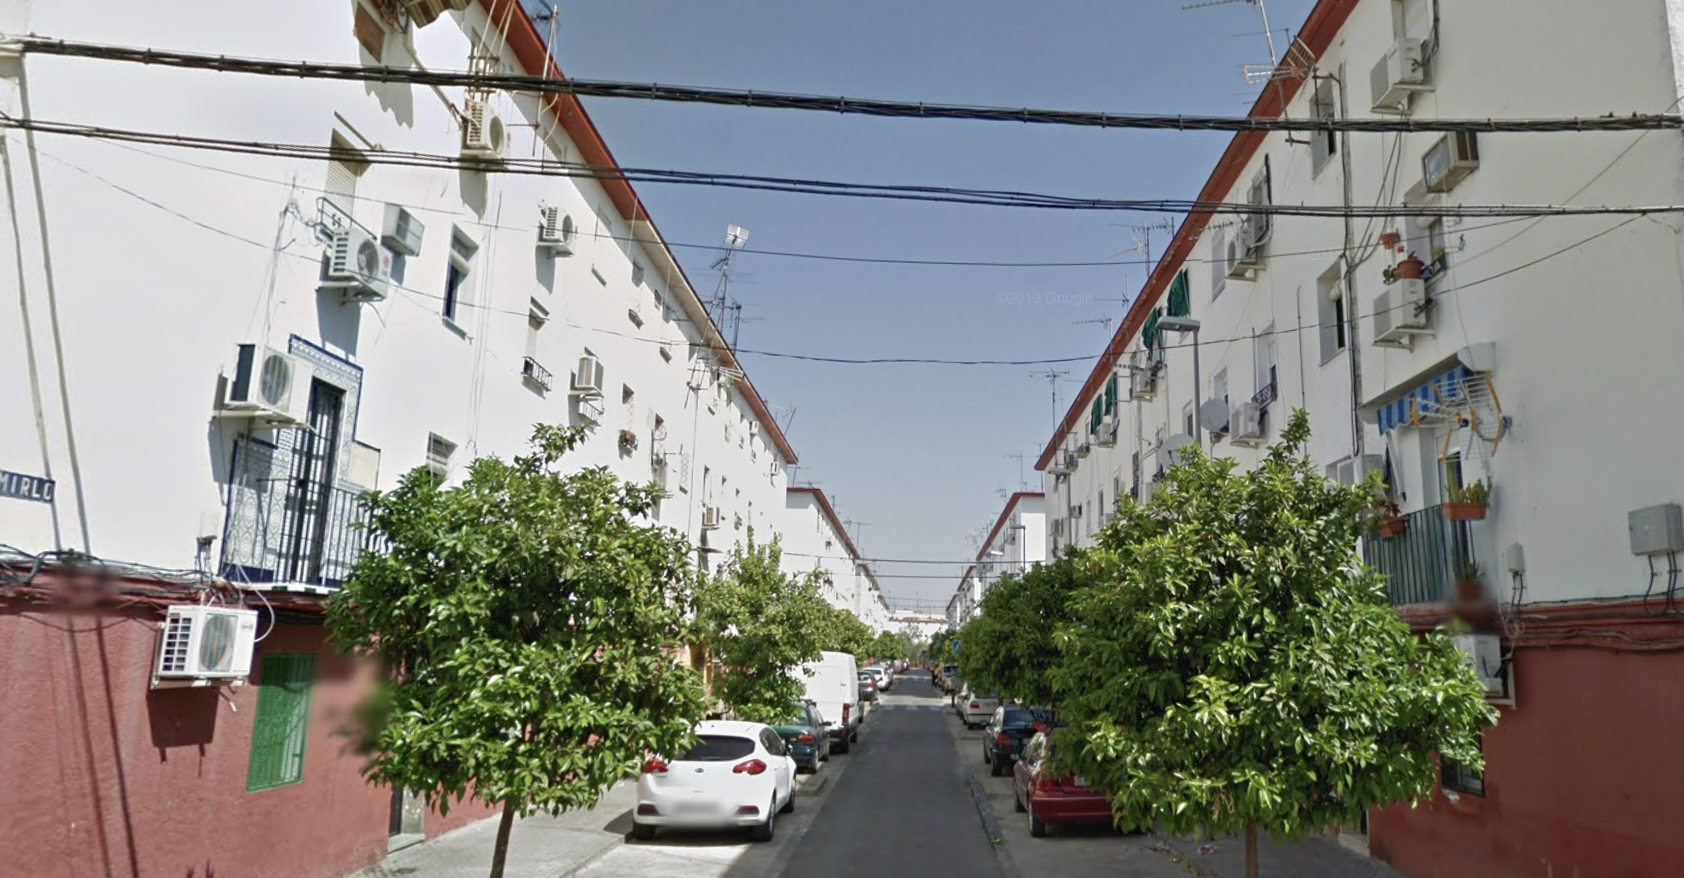 Imagen de Google Maps de la calle Mirlo de Sevilla, donde se produjo el altercado entre sanitarios y vecinos.